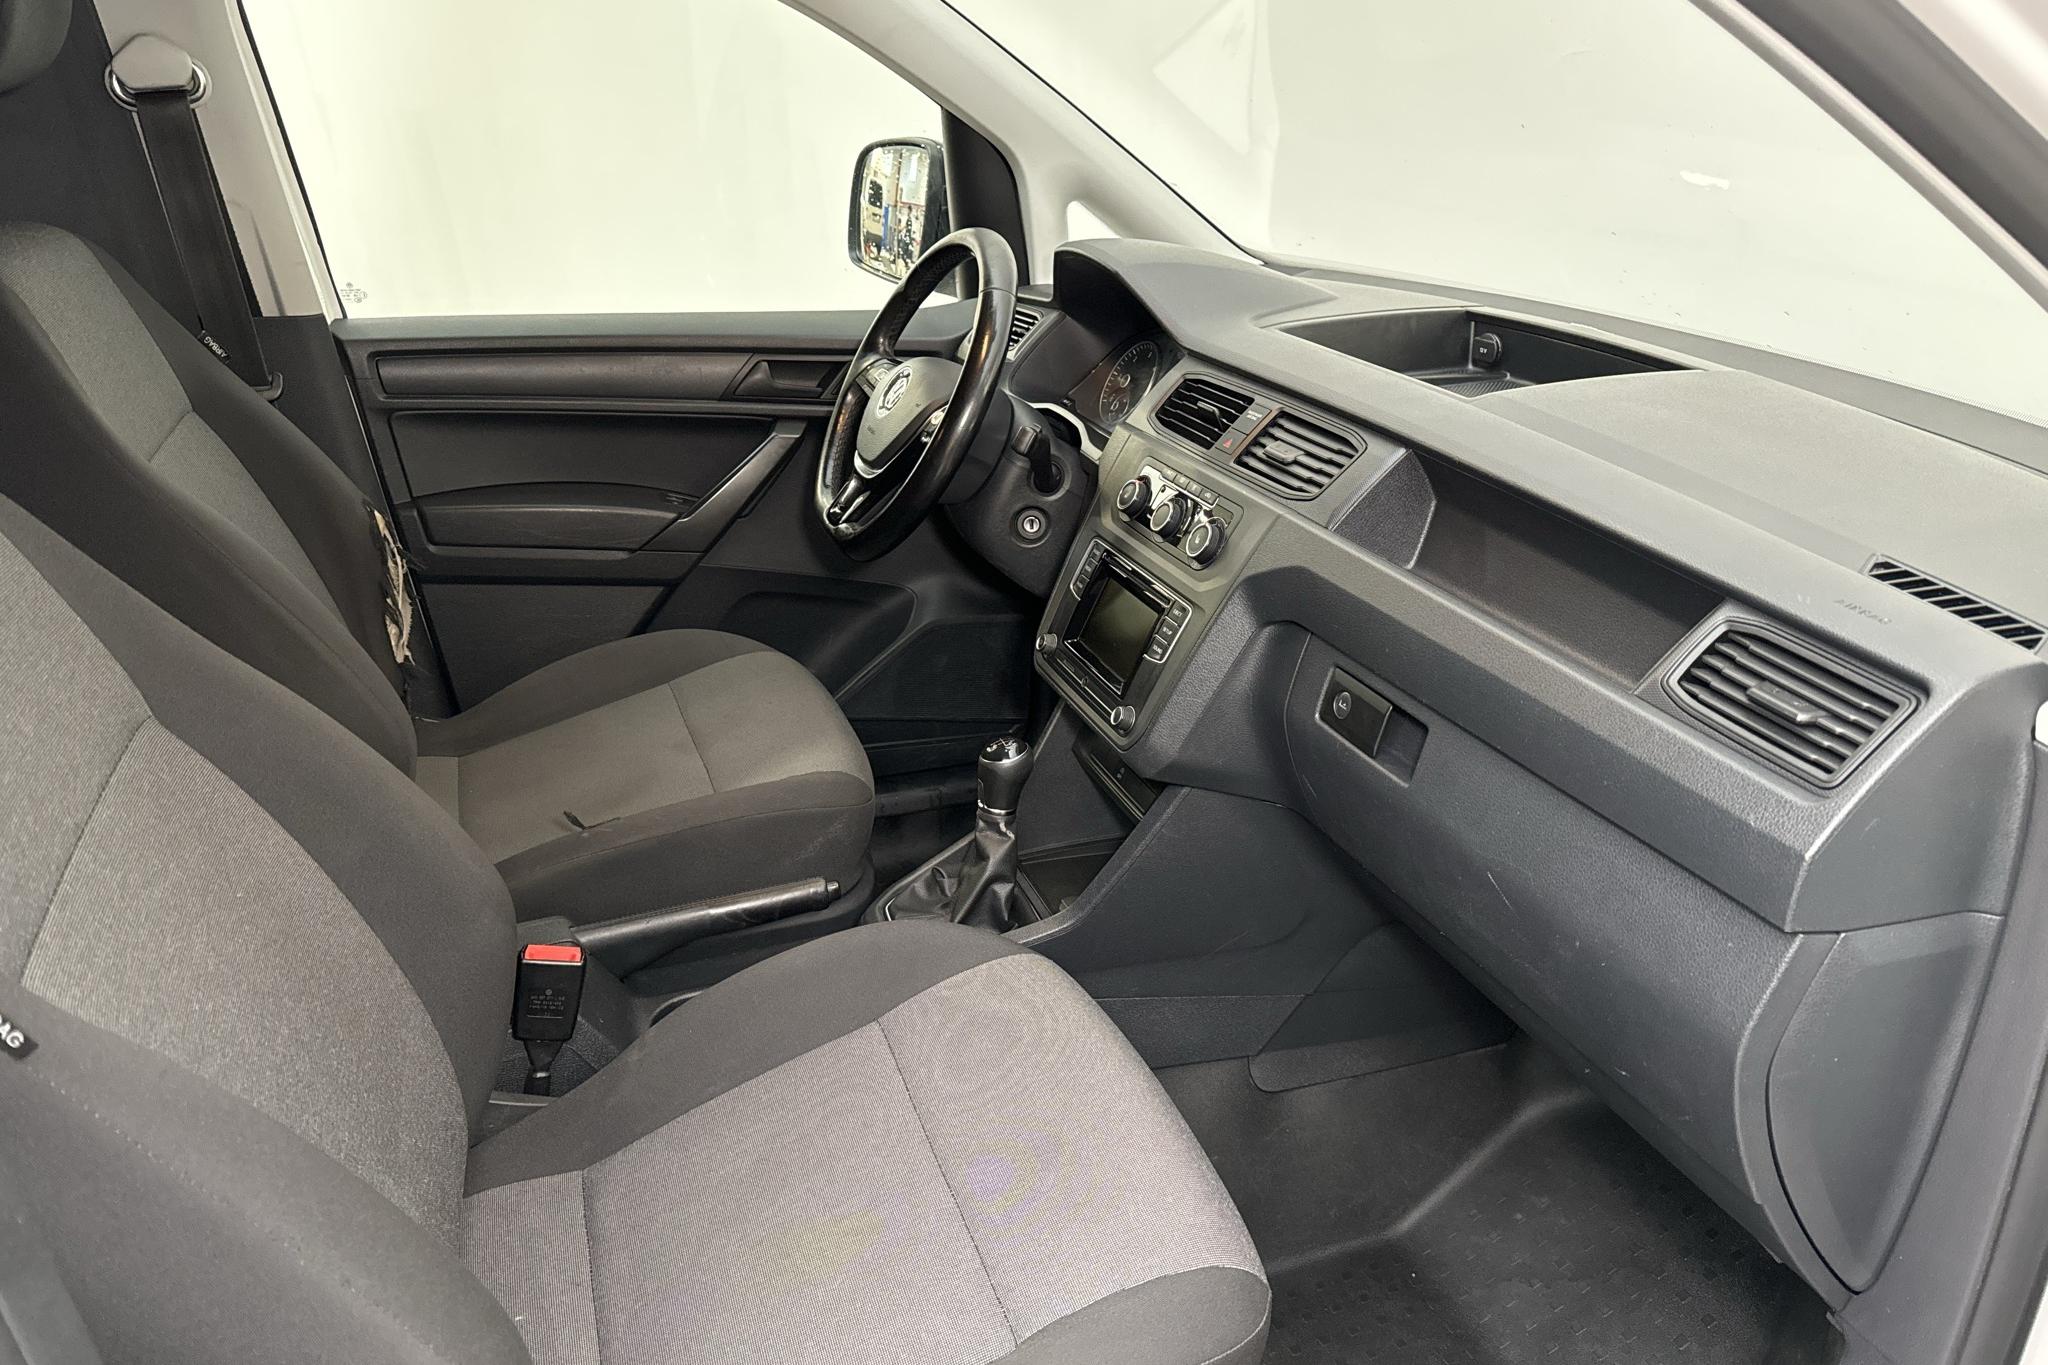 VW Caddy 2.0 TDI (75hk) - 13 732 mil - Manuell - vit - 2017